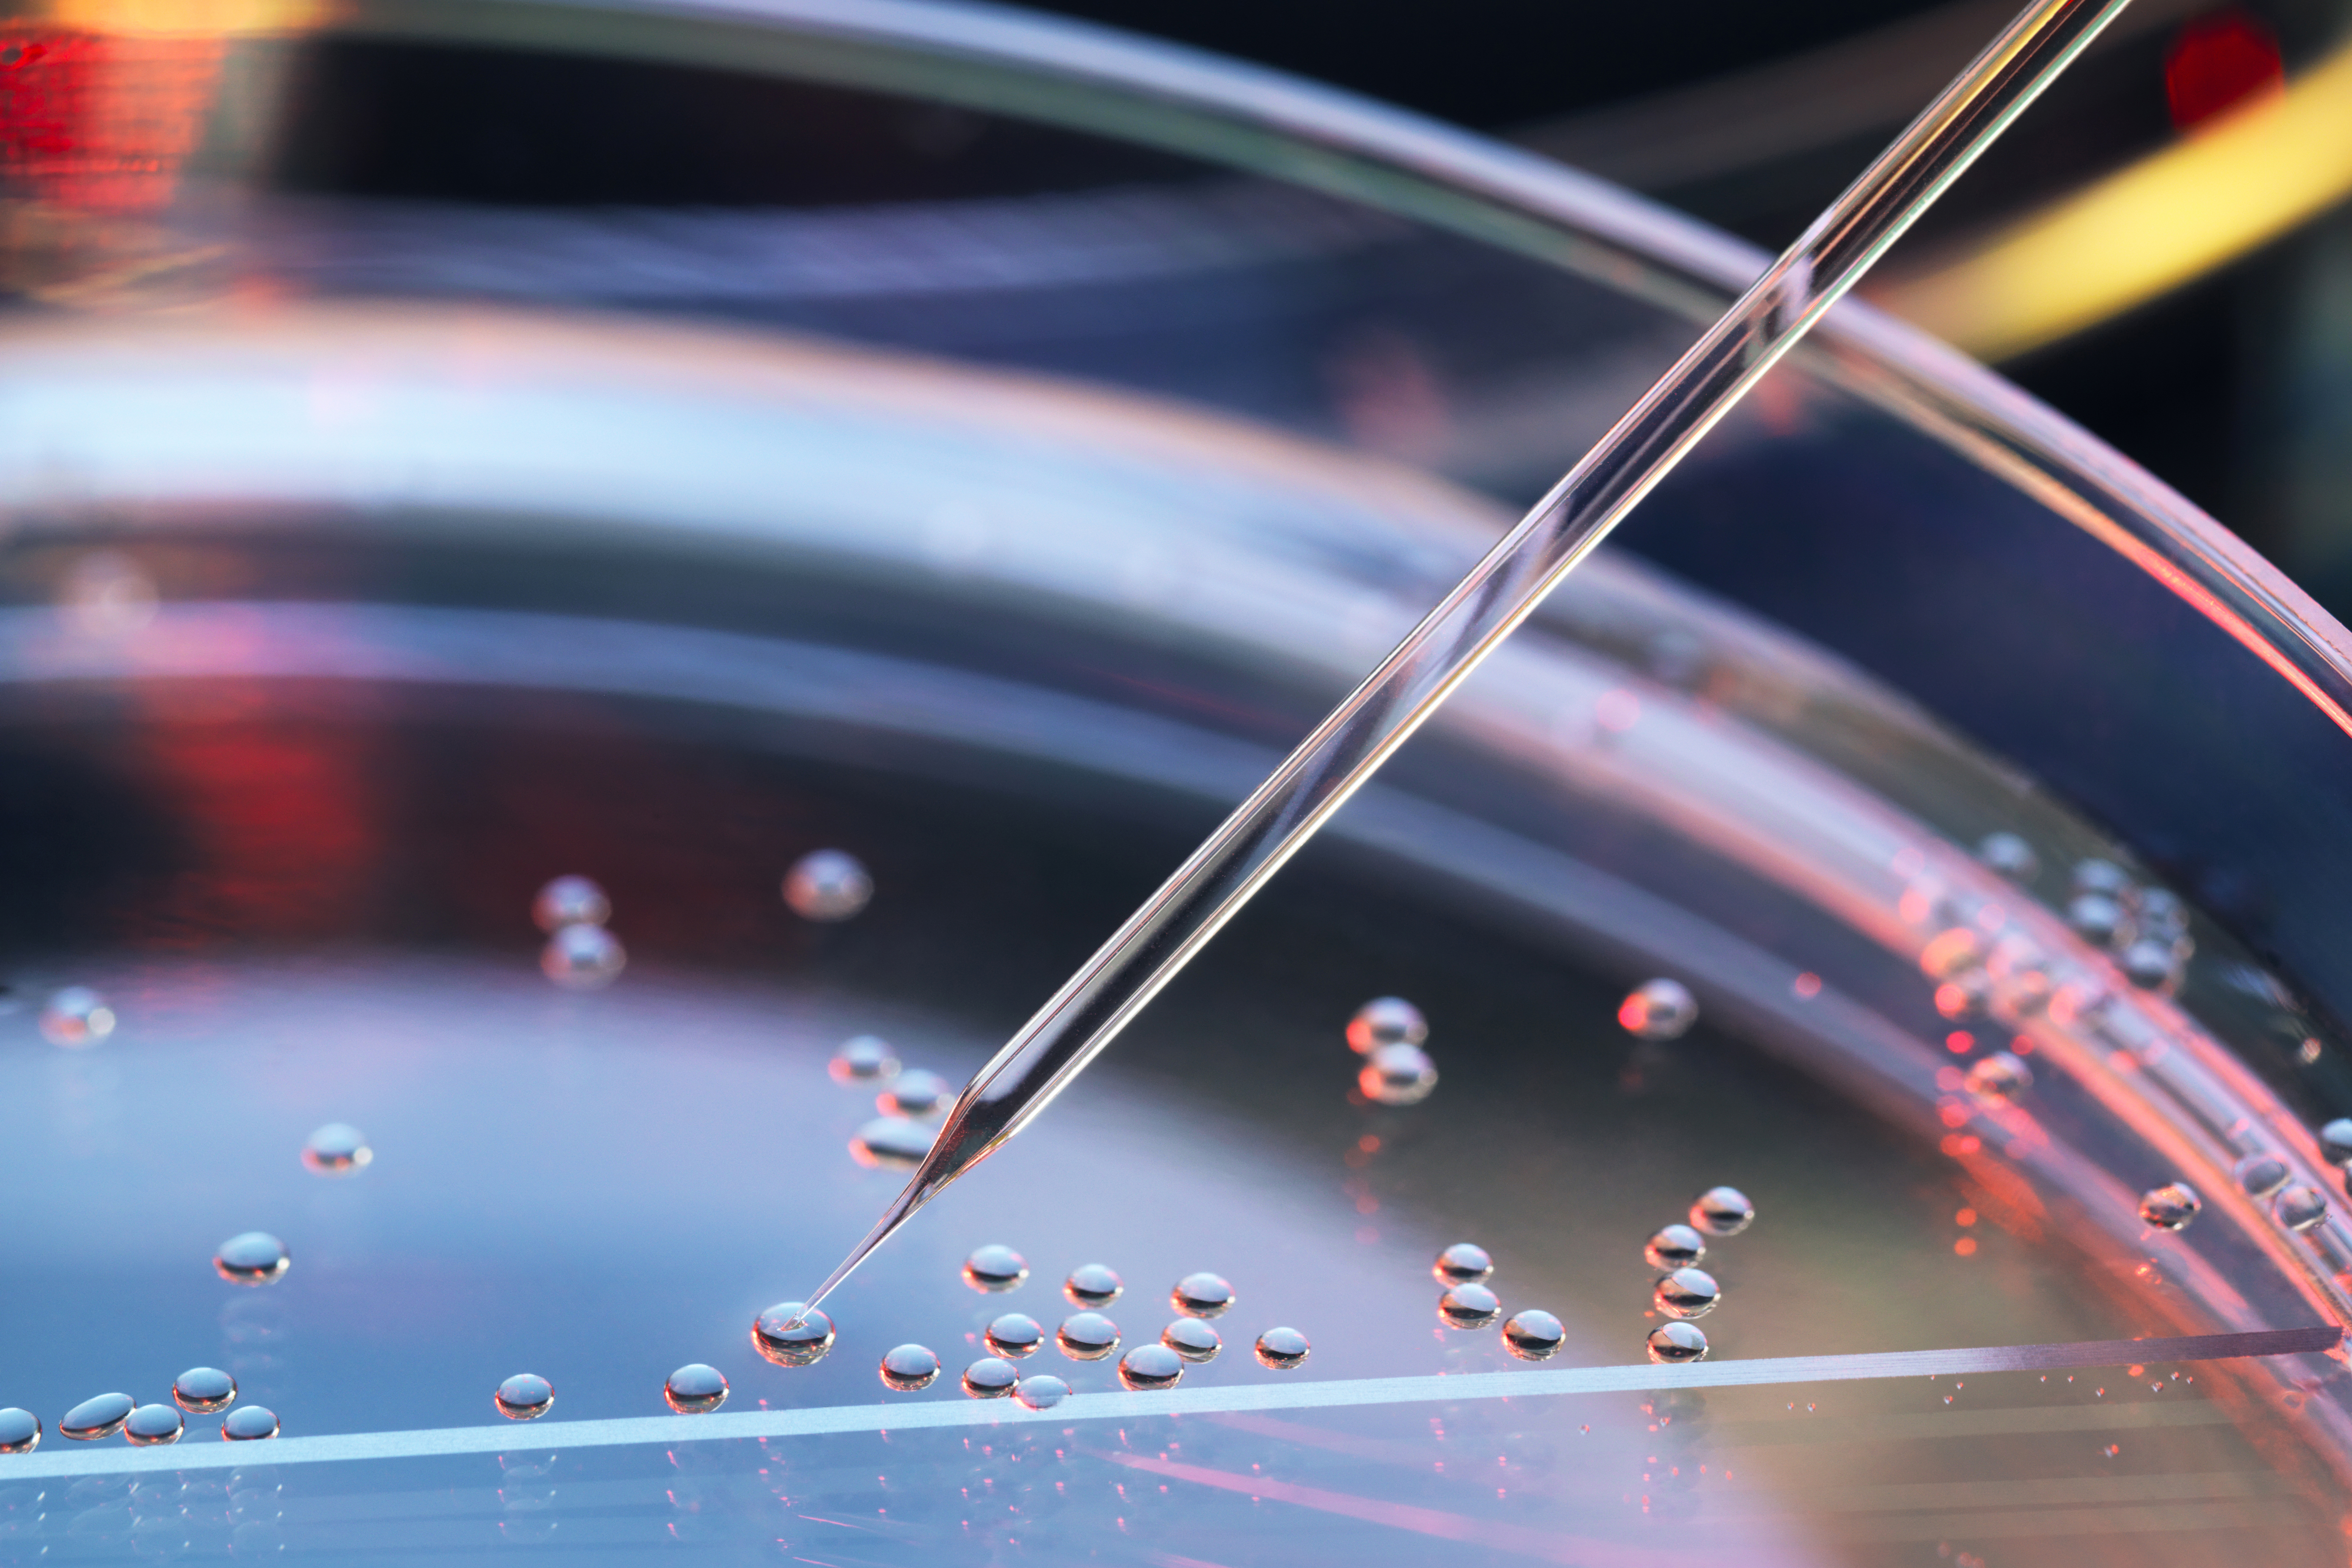 Stem cells in a petri dish